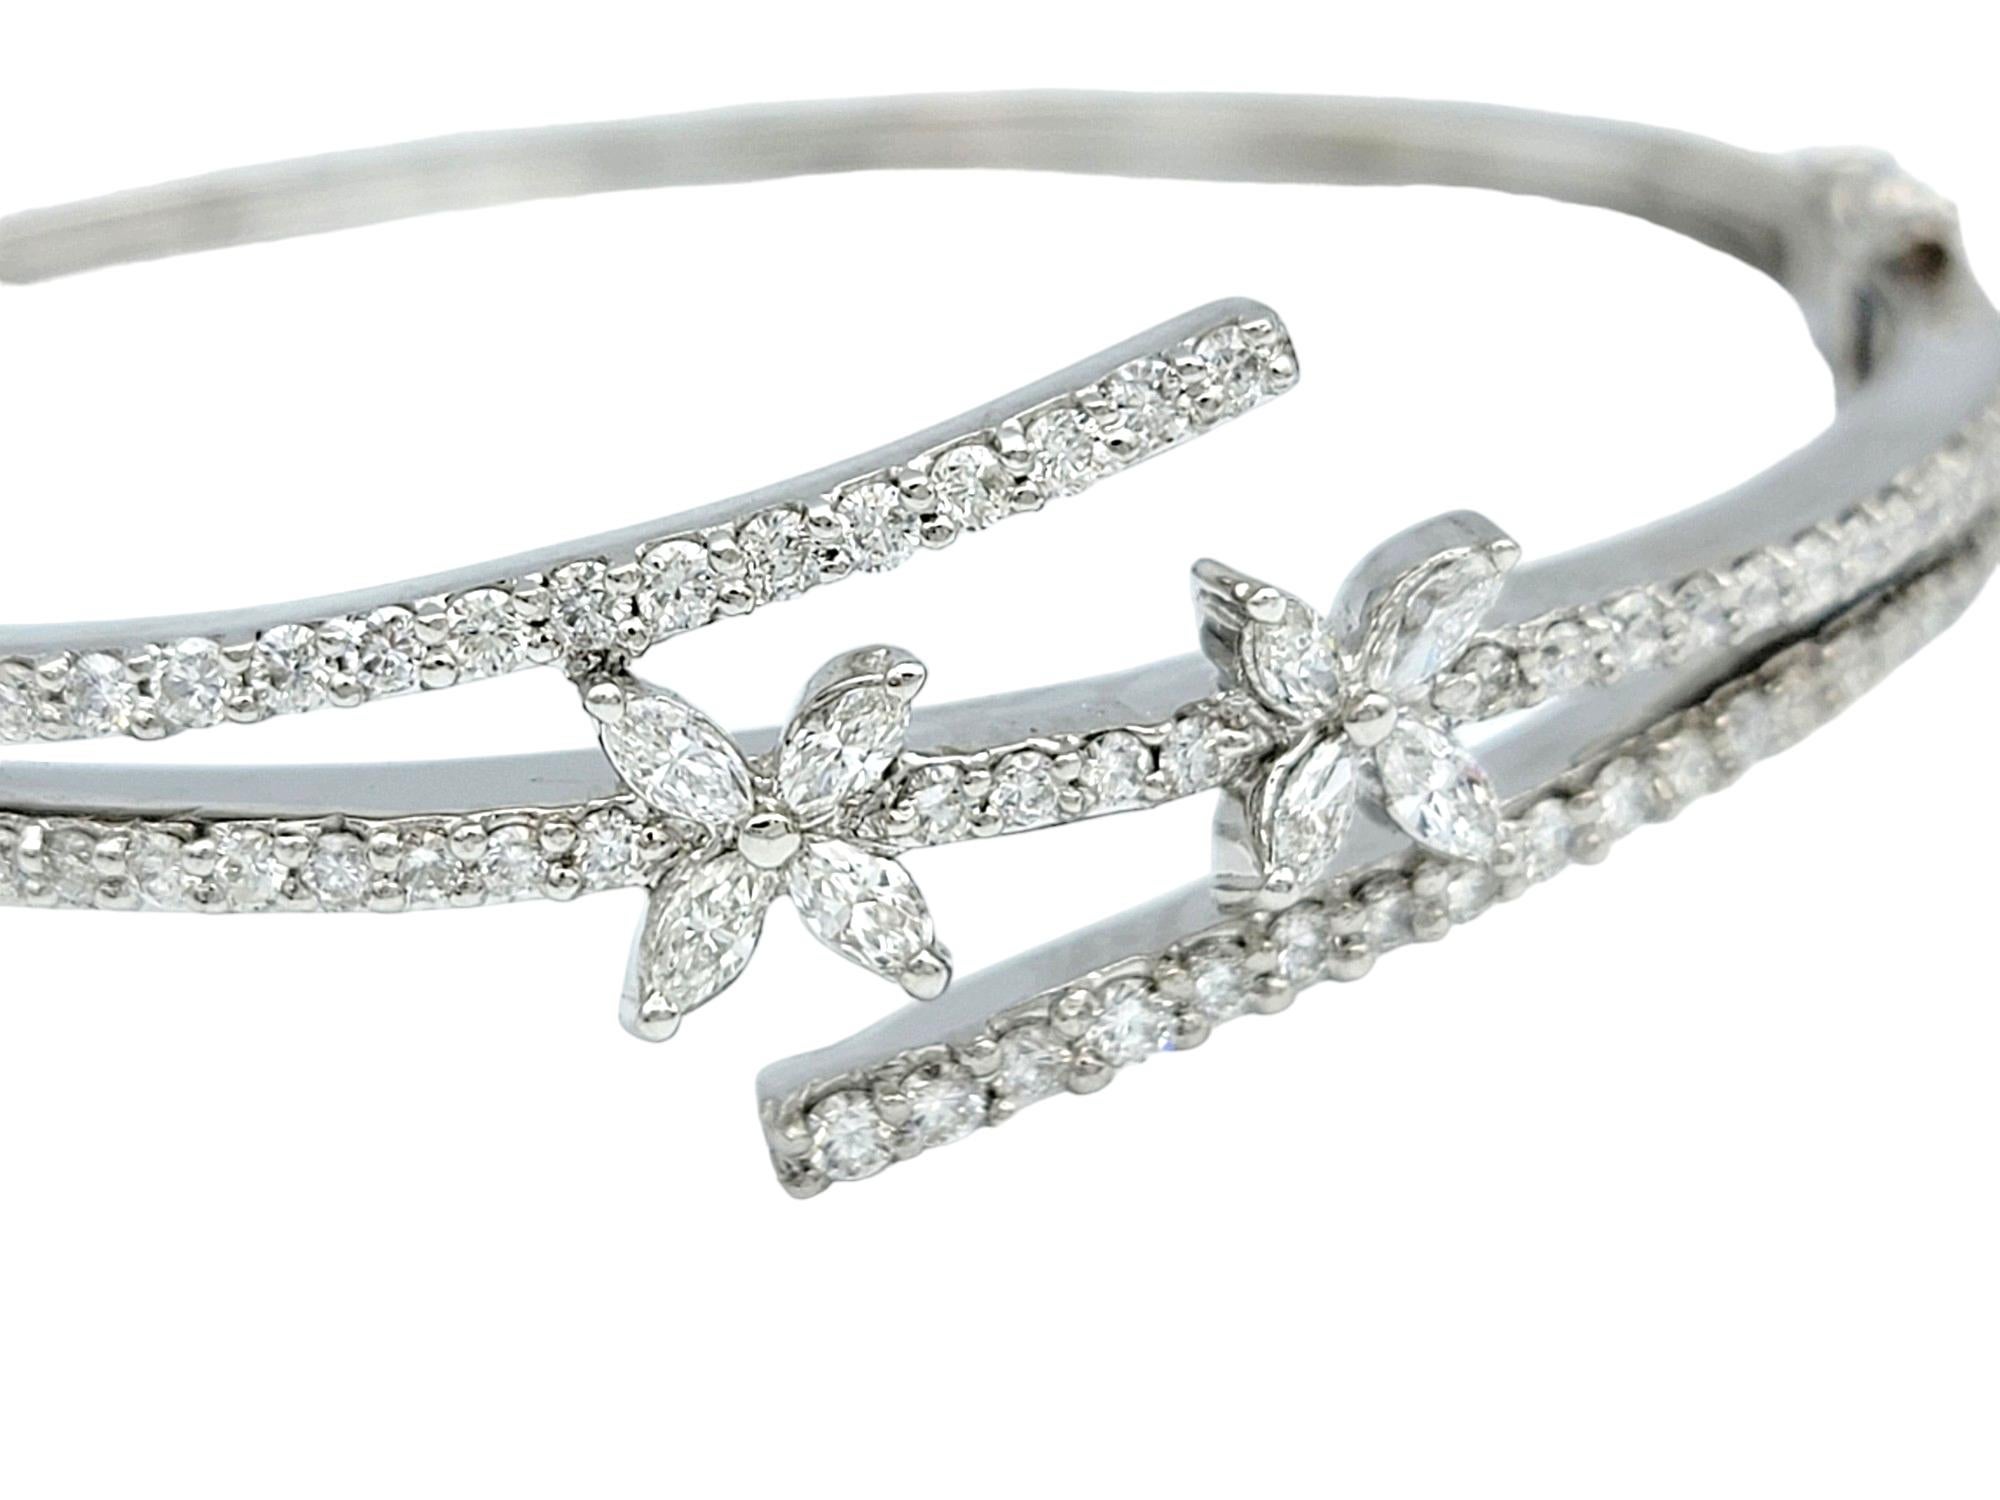 Ce magnifique bracelet en diamants, réalisé dans un luxueux or blanc 18 carats, respire l'élégance et la sophistication. Conçu dans un style bypass, le bracelet présente un arrangement unique de diamants marquise disposés dans une jolie formation de